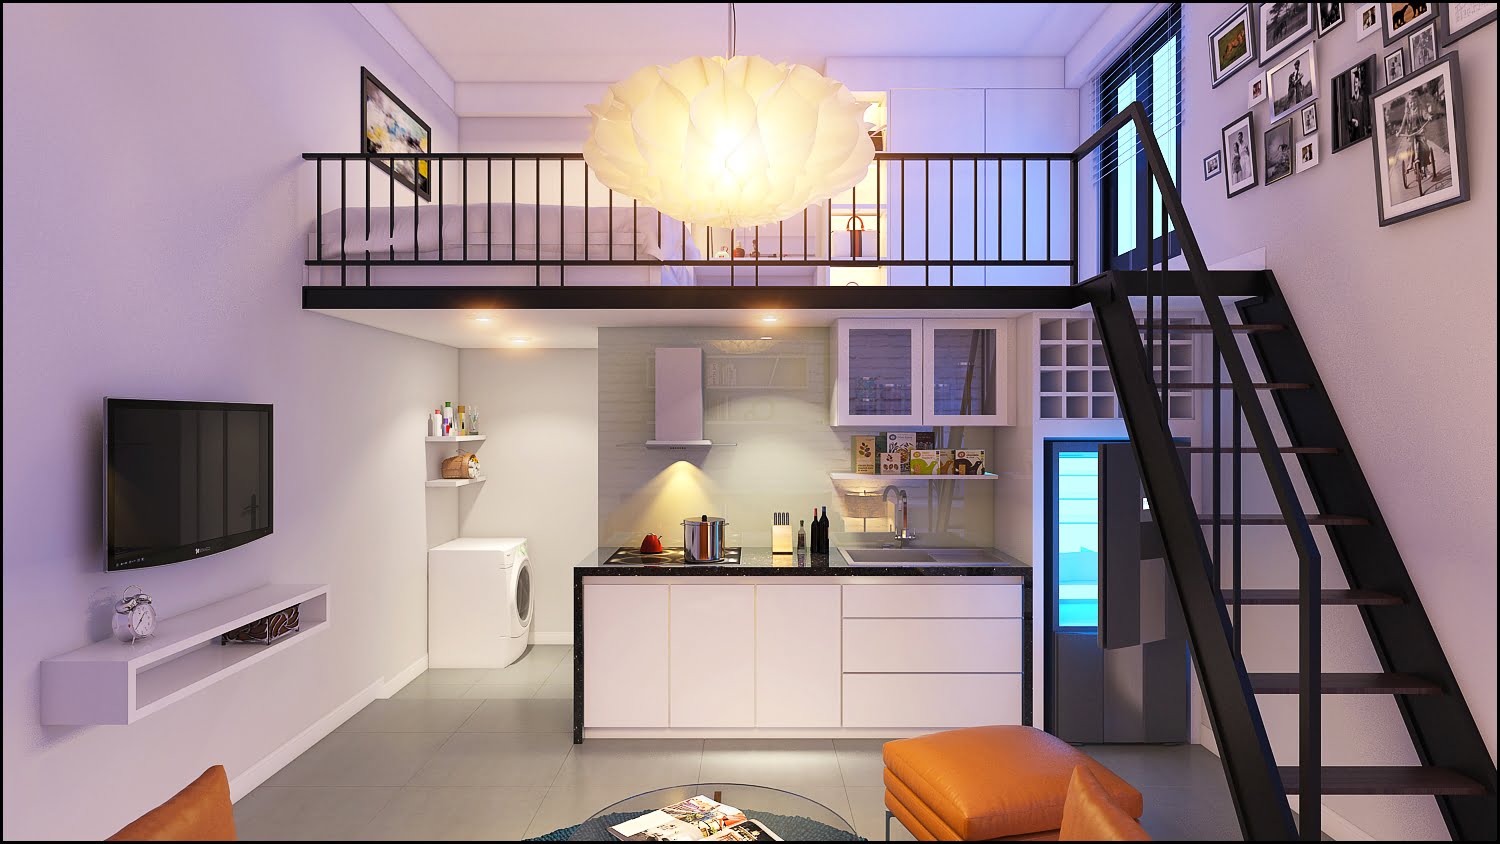 Mẫu thiết kế căn hộ mini cho thuê đẹp hấp dẫn khách hàng | ROMAN